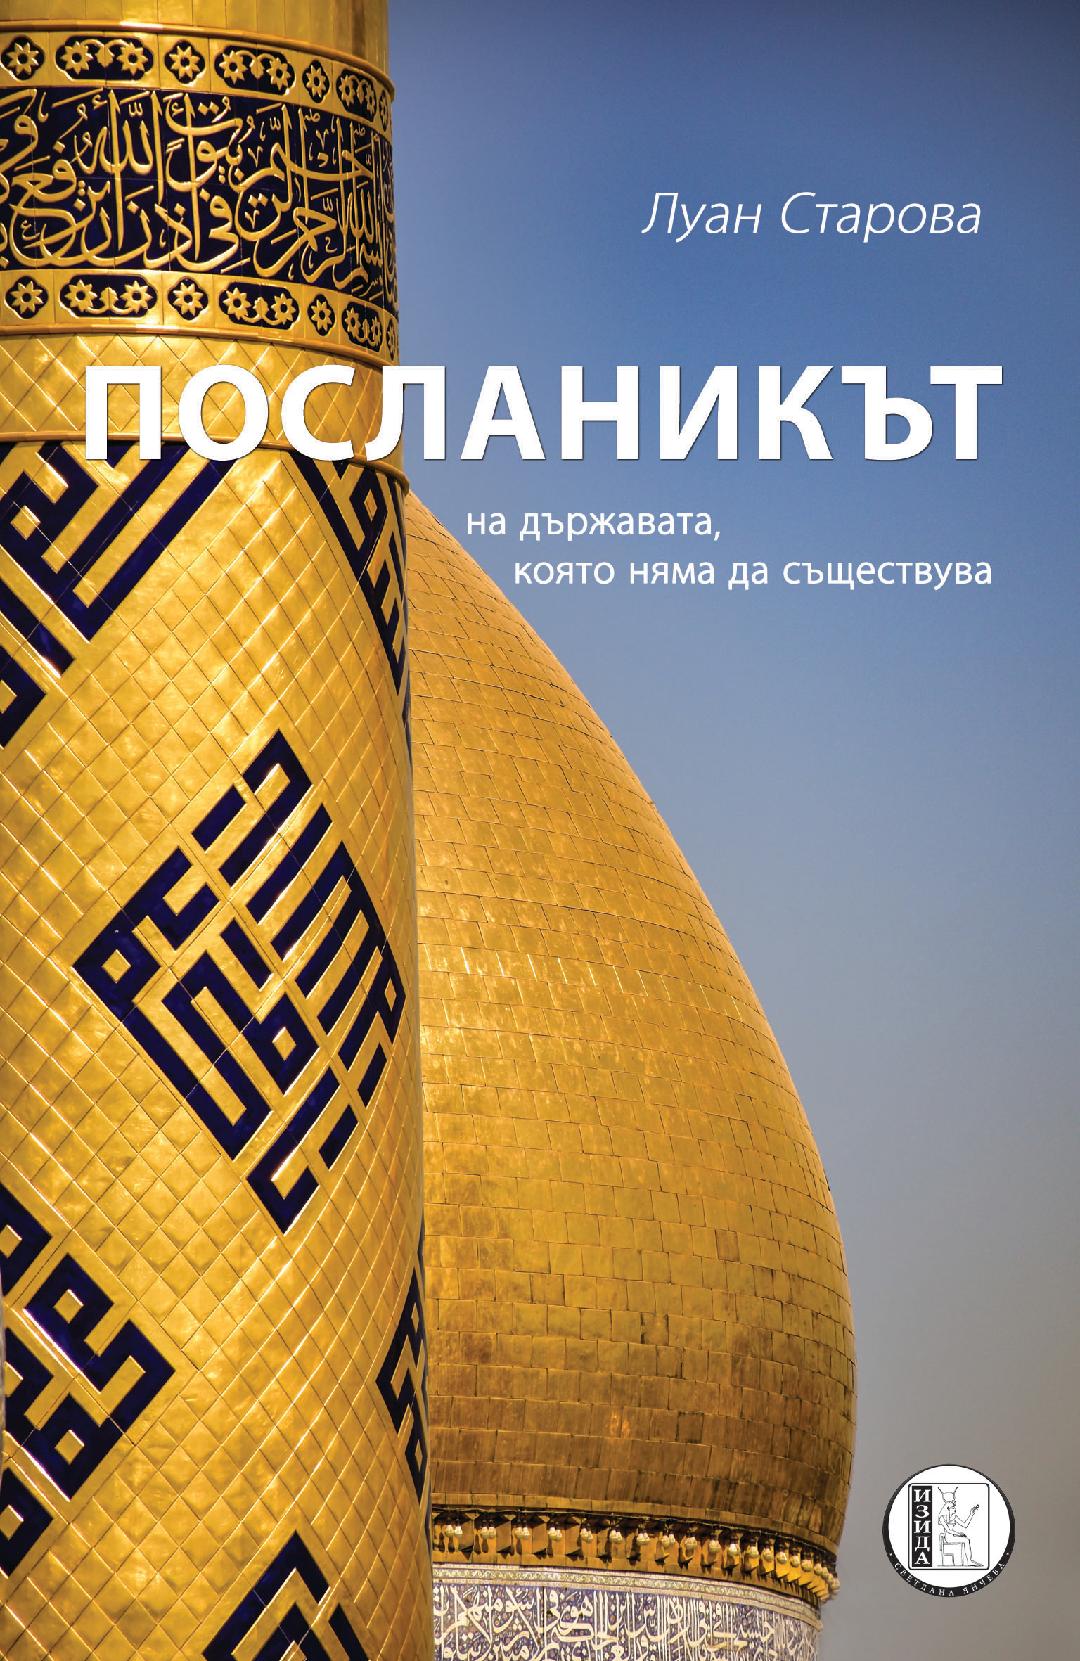 Шестиот роман “АМБАСАДИ” на Луан Старова во Бугарија